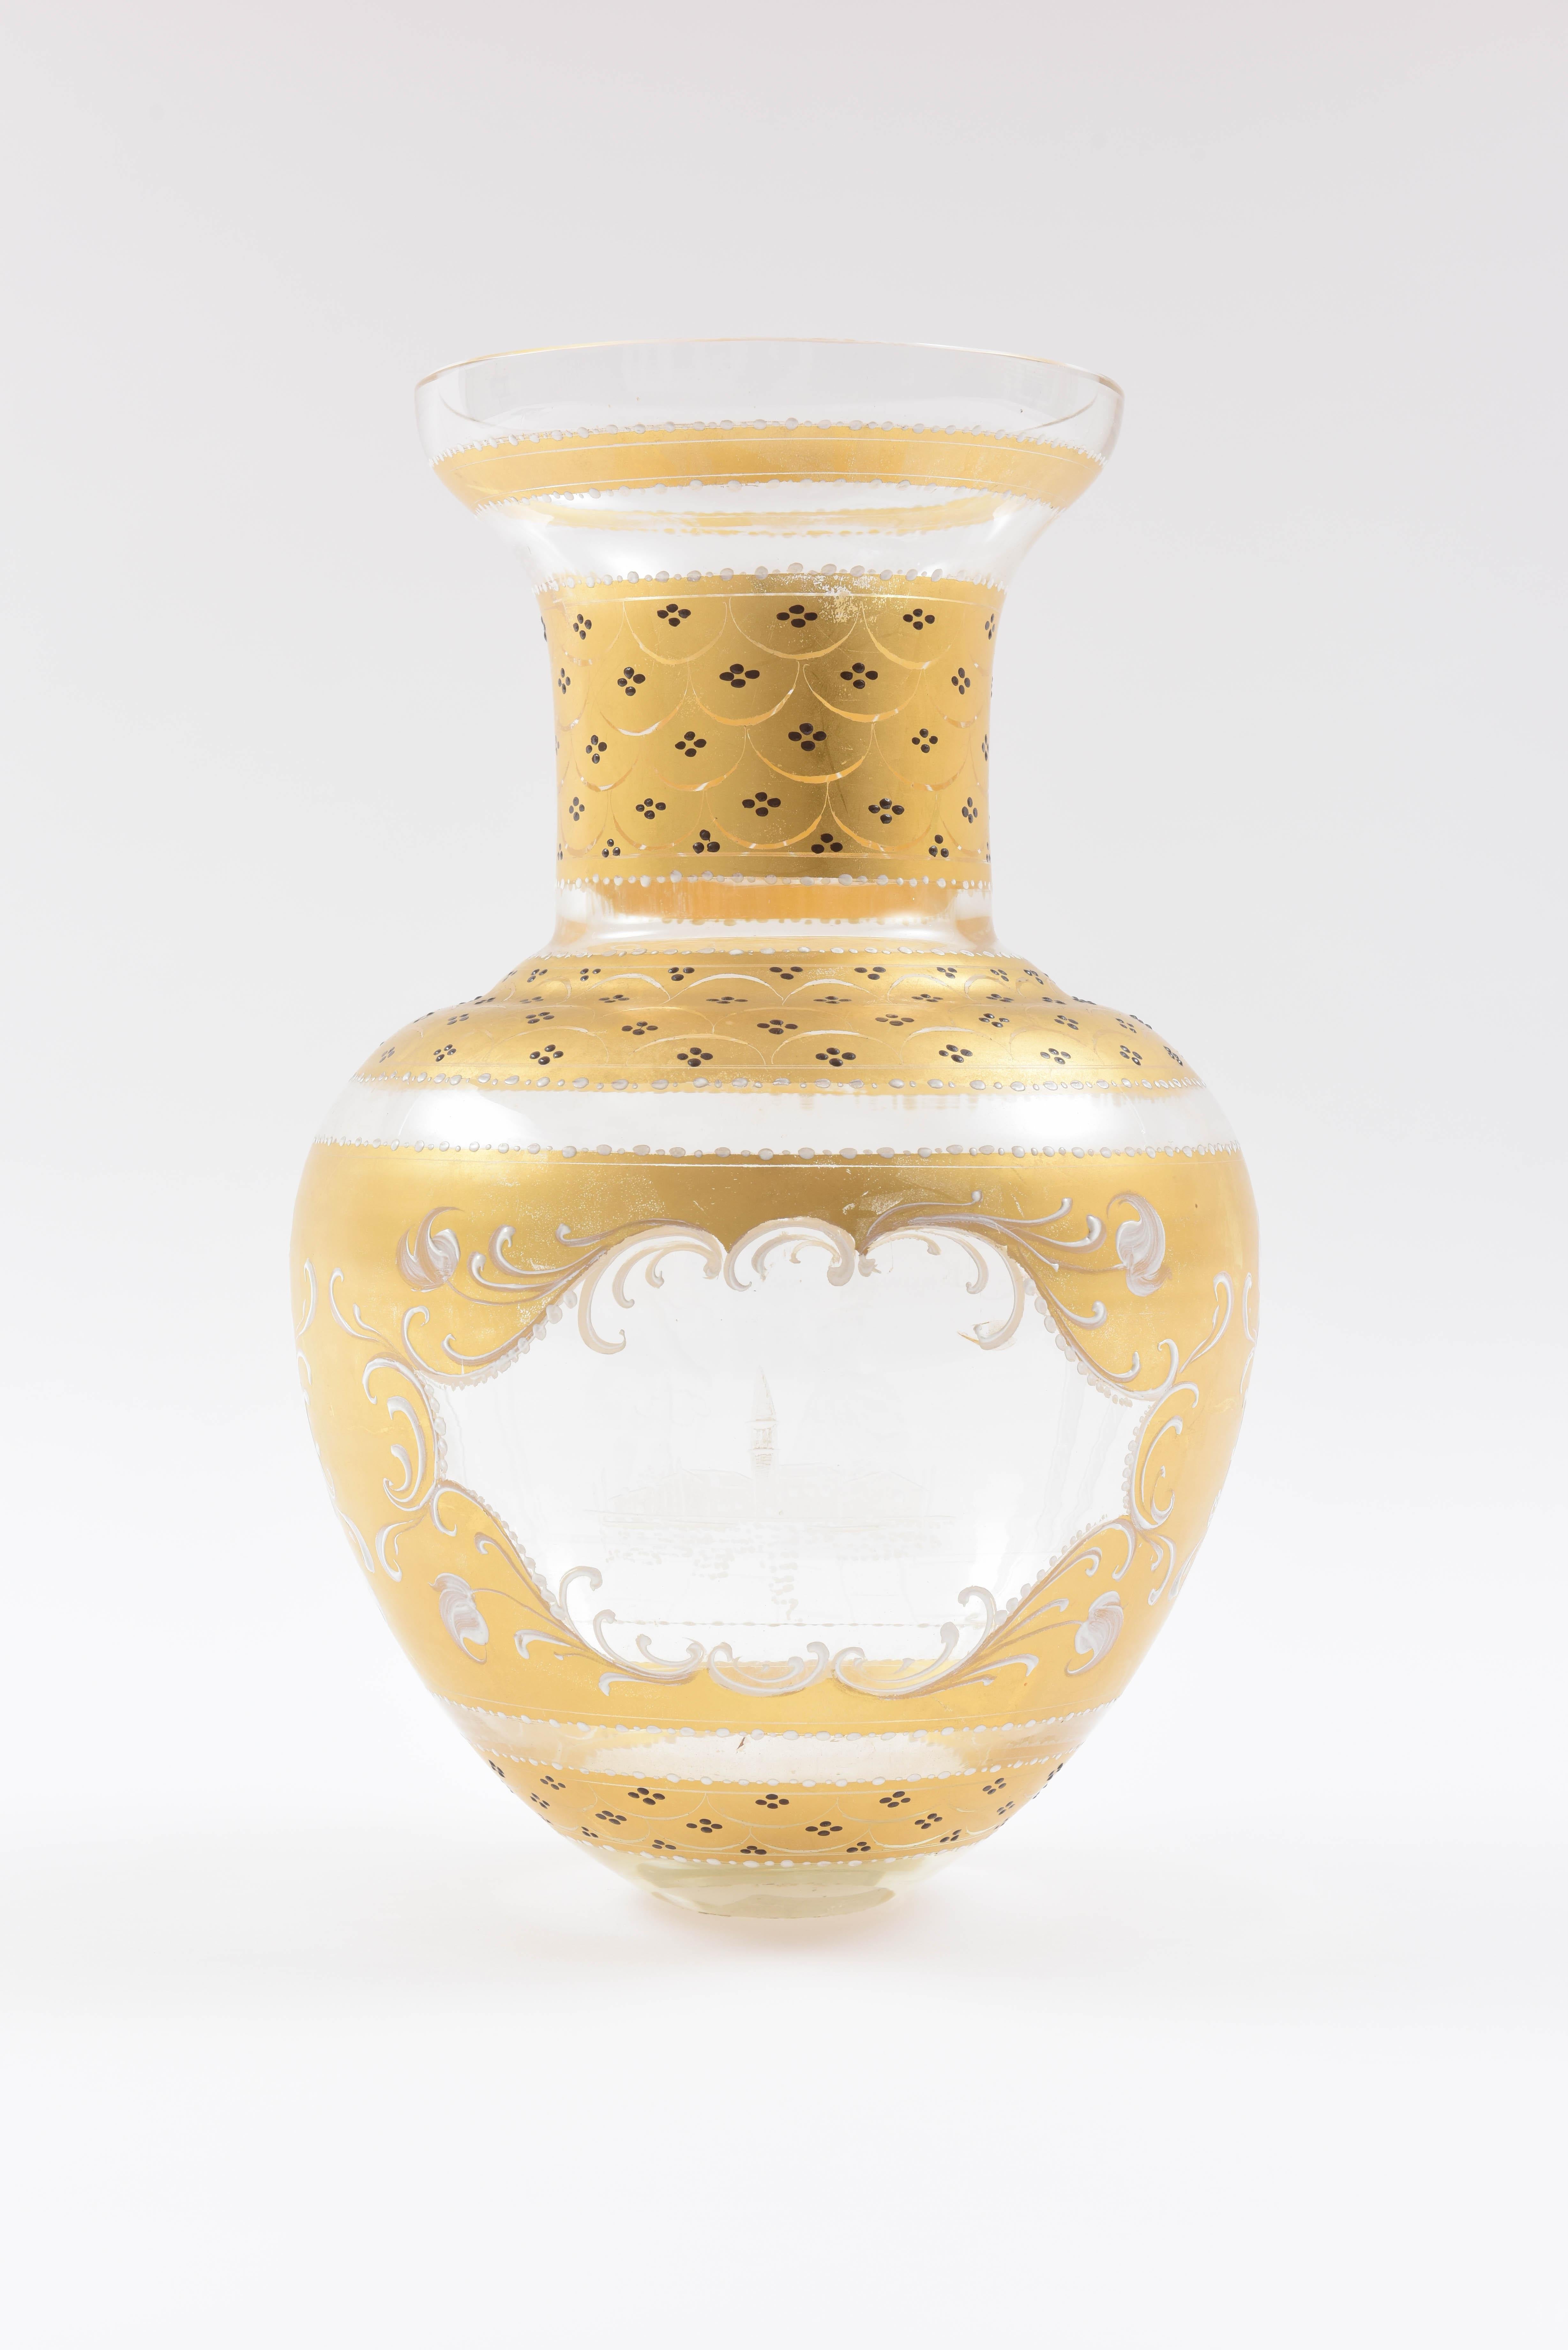 Italian Tall Impressive Venetian Glass Vase with White Enamel Detail, Hand Engraving